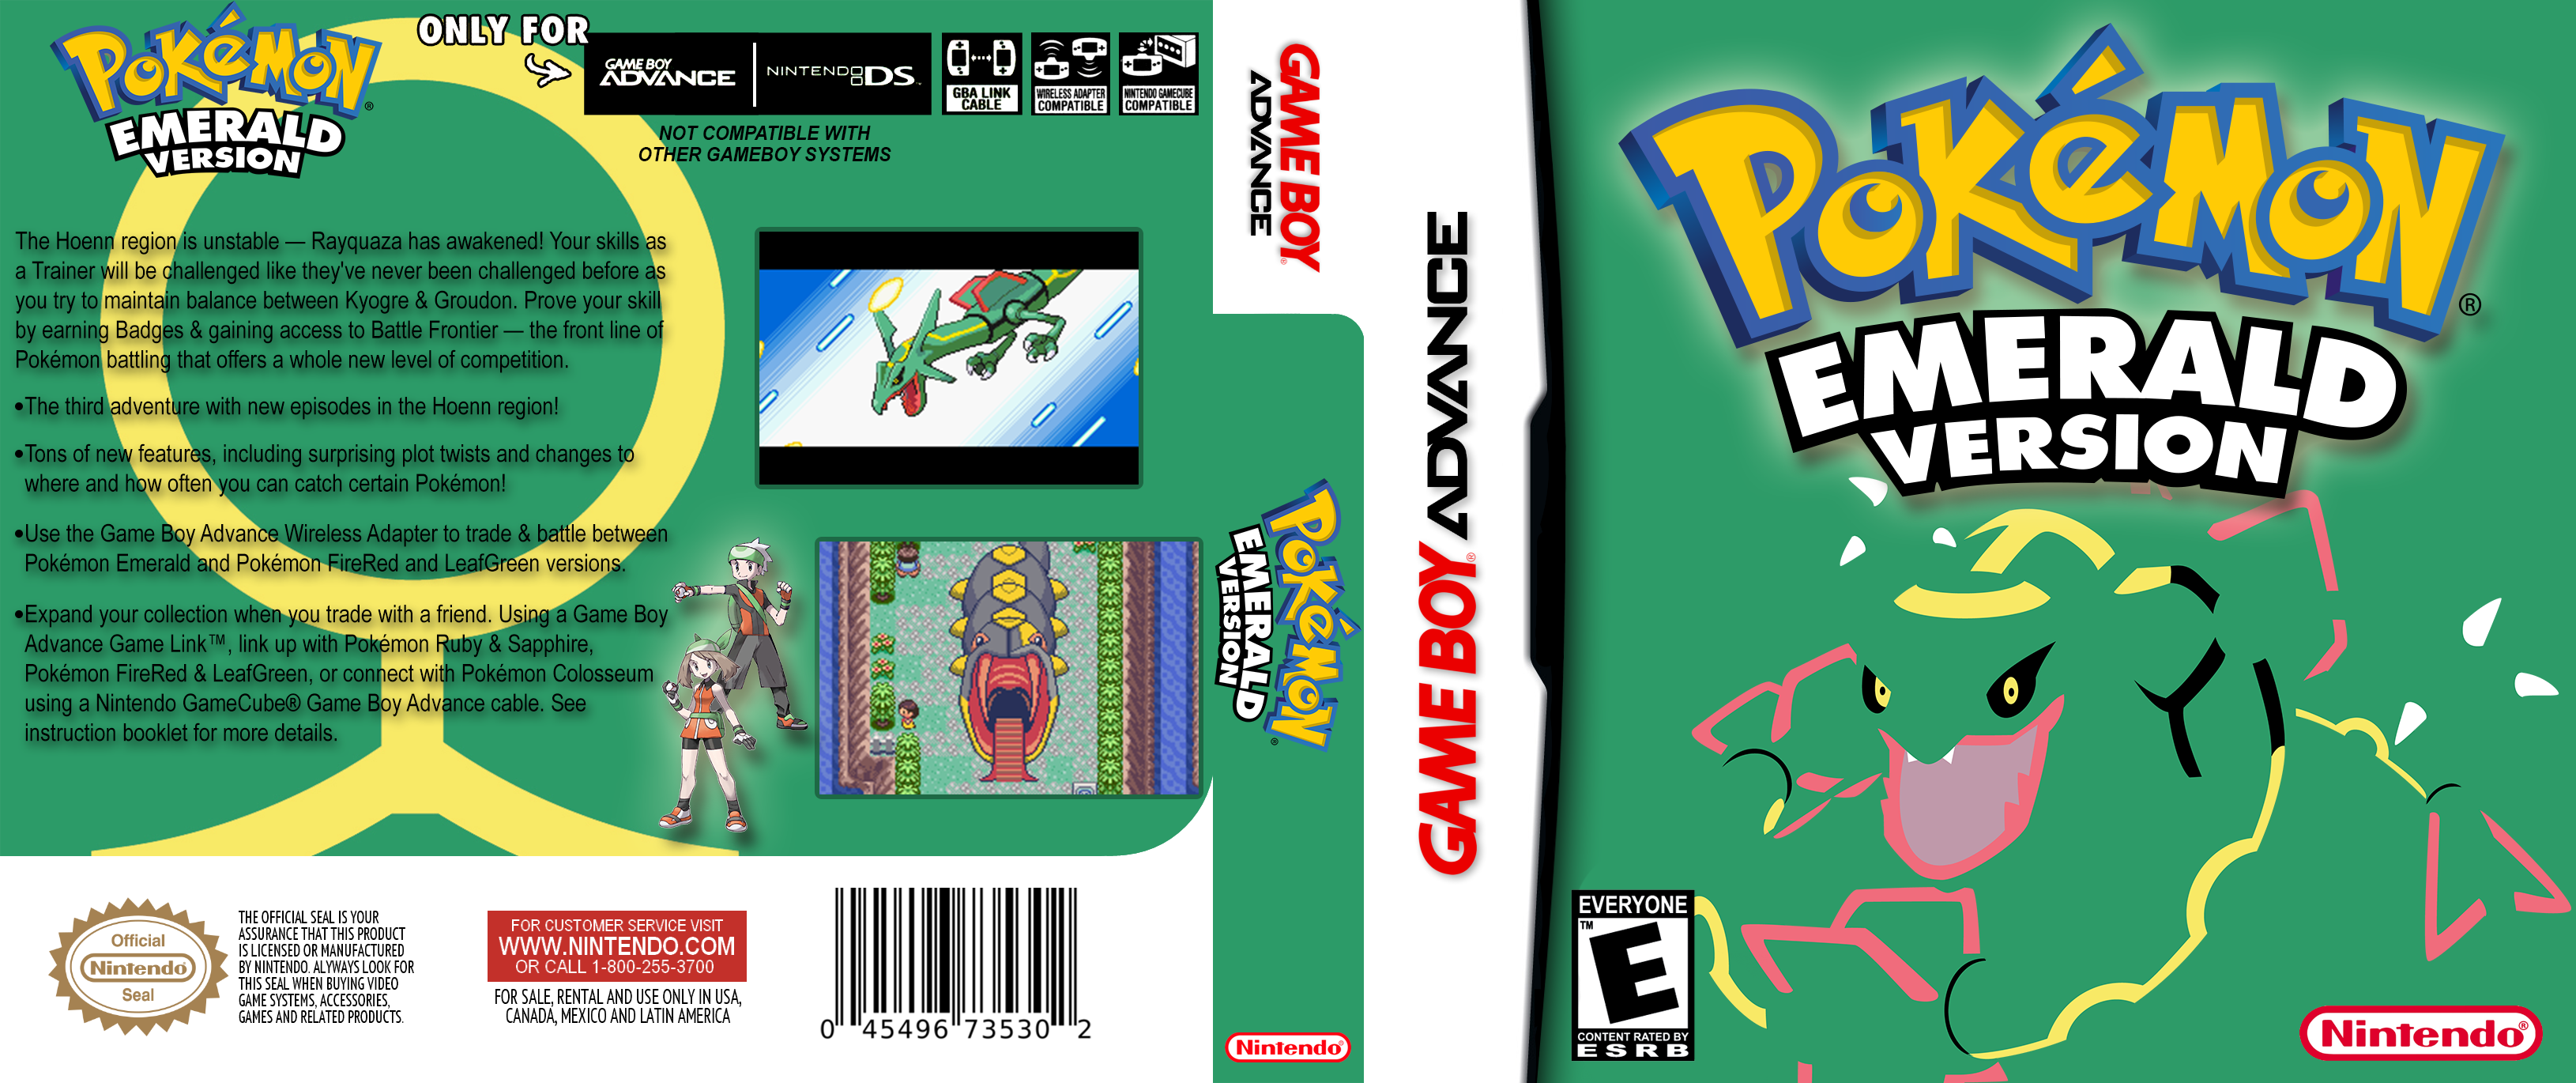 Pokemon Emerald Version Minimalist box cover